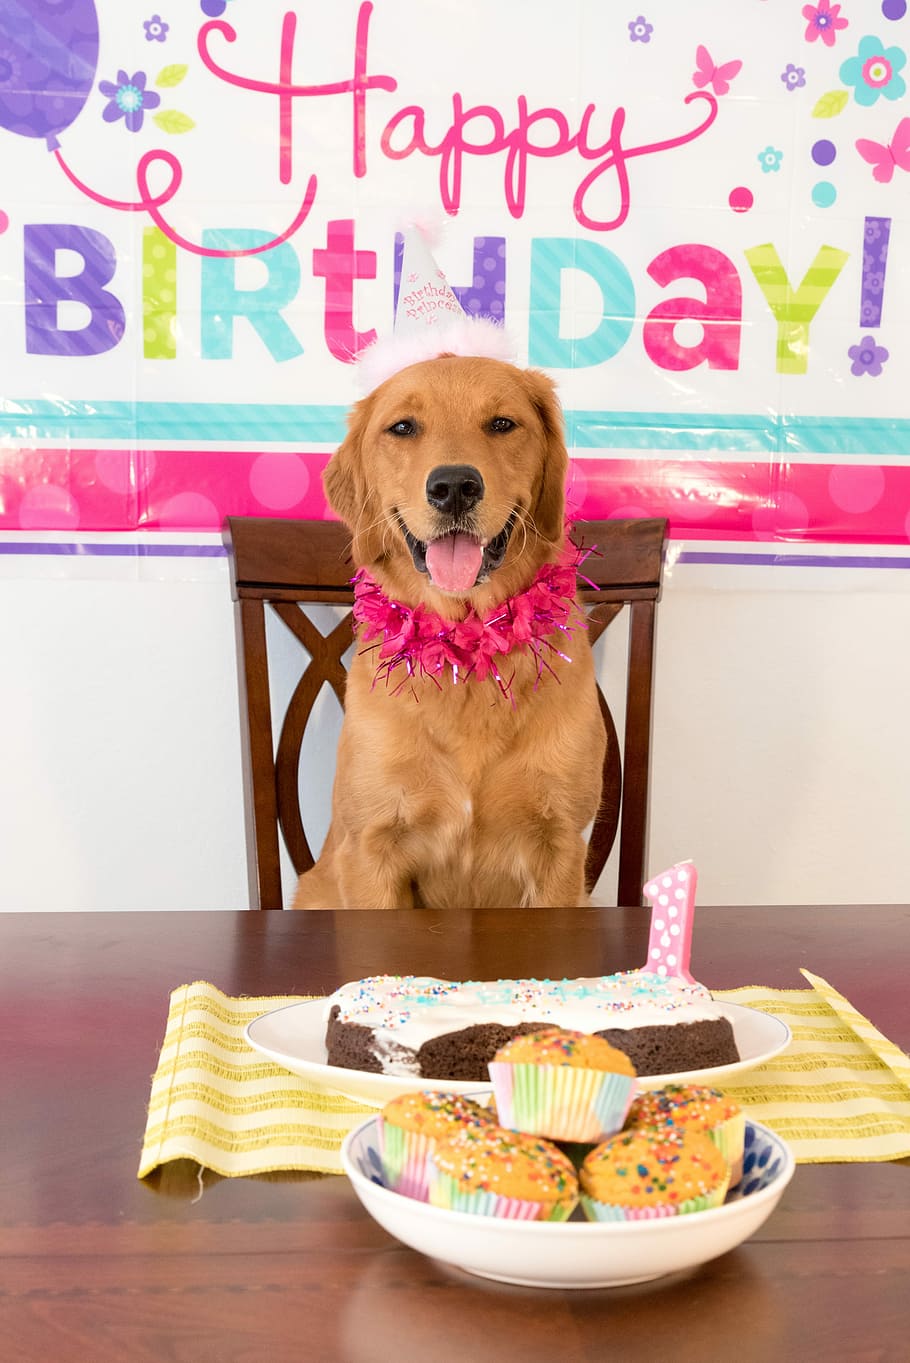 foto, marrón, perro, pasteles, perro marrón, perro de cumpleaños, perro sonriente, mascotas, animal, mirando a cámara